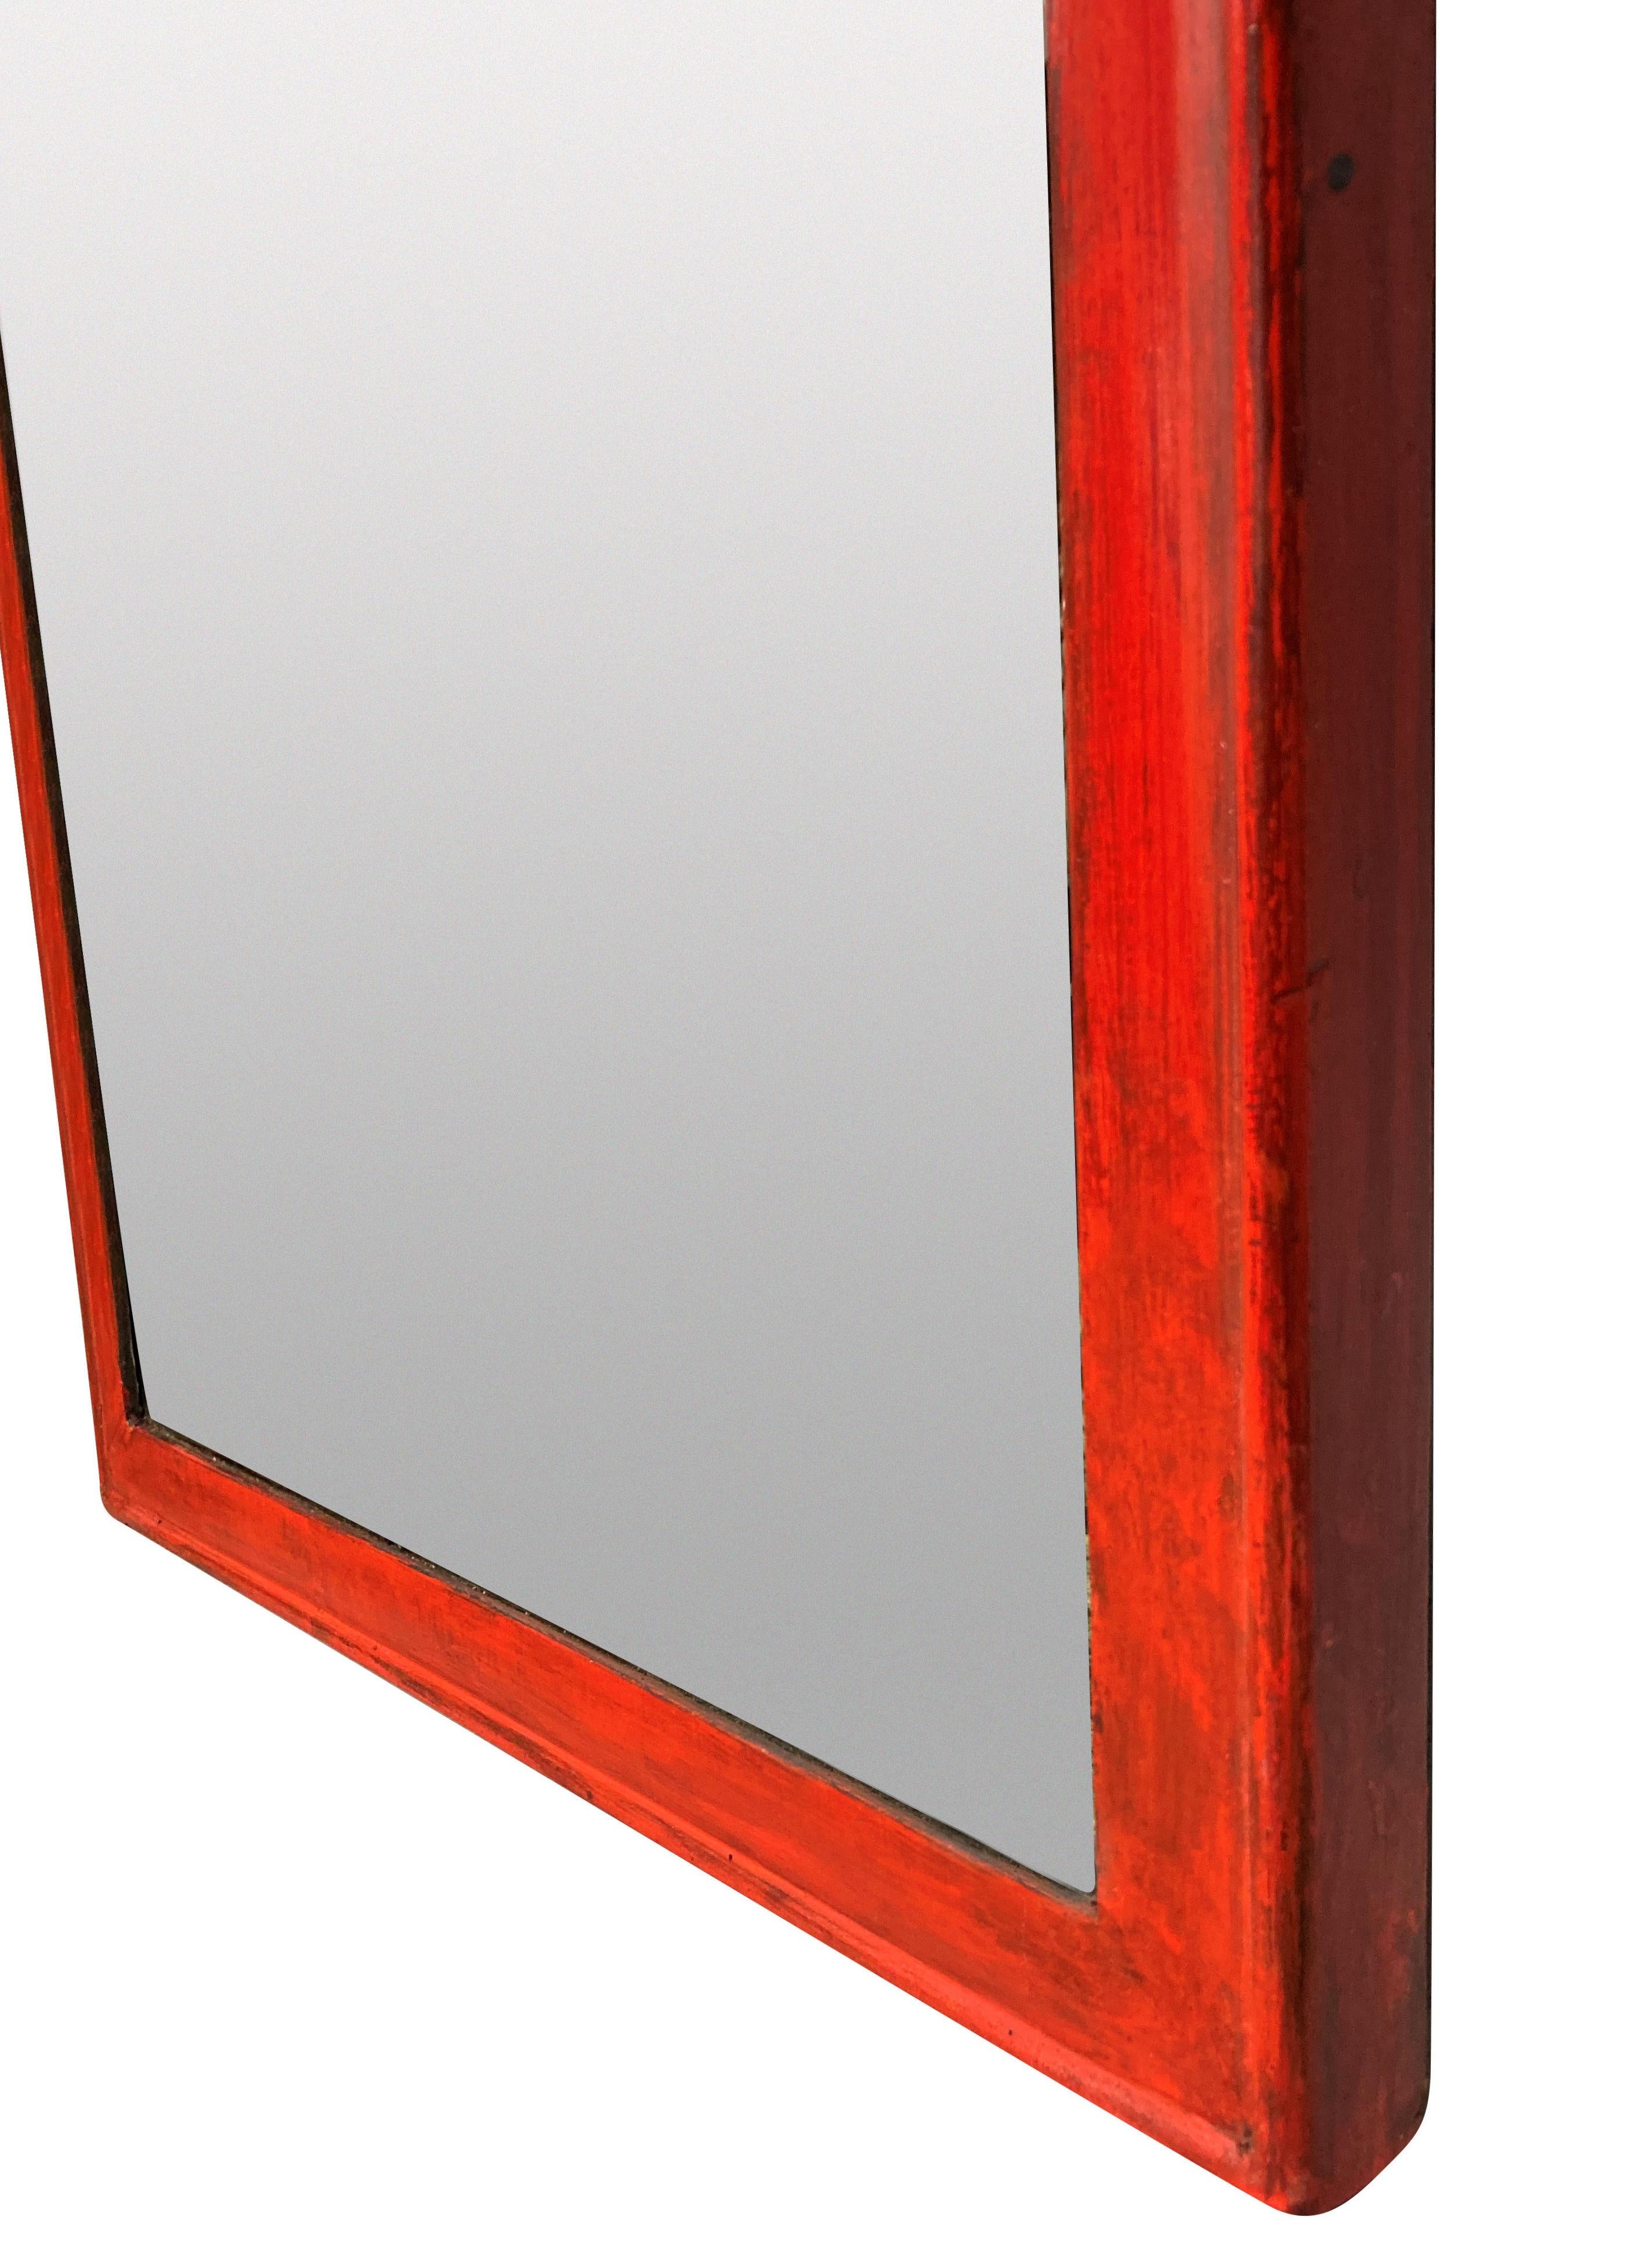 Miroir étroit laqué rouge de style Queen Anne anglais, qui forme une paire assortie avec une liste séparée.